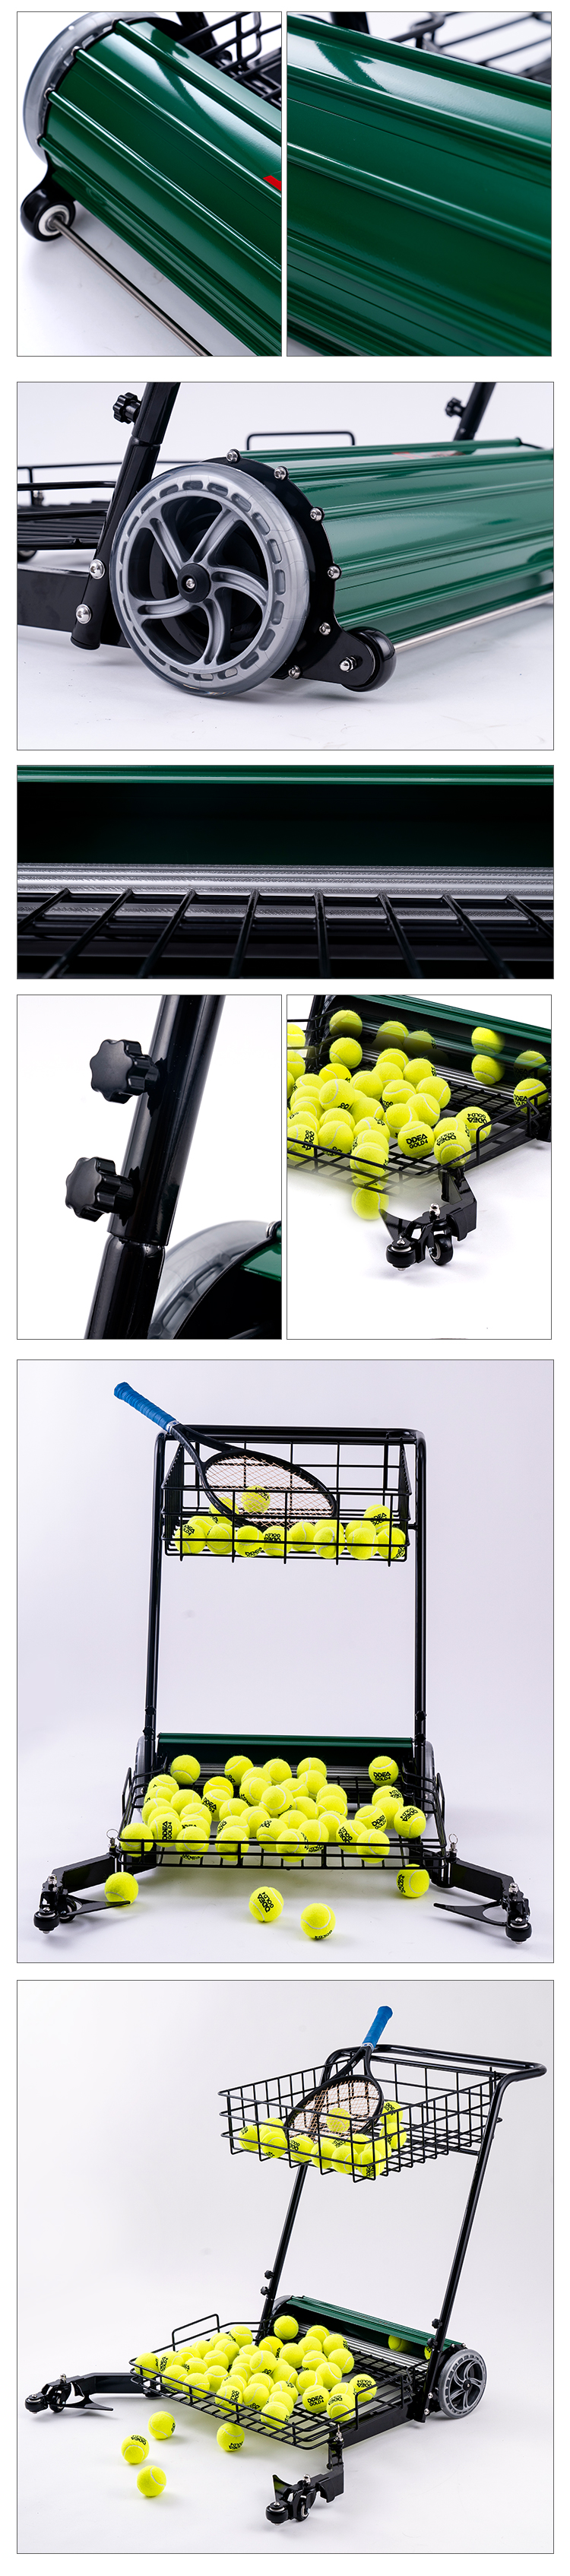 Tennis-Sammelautomat (7)